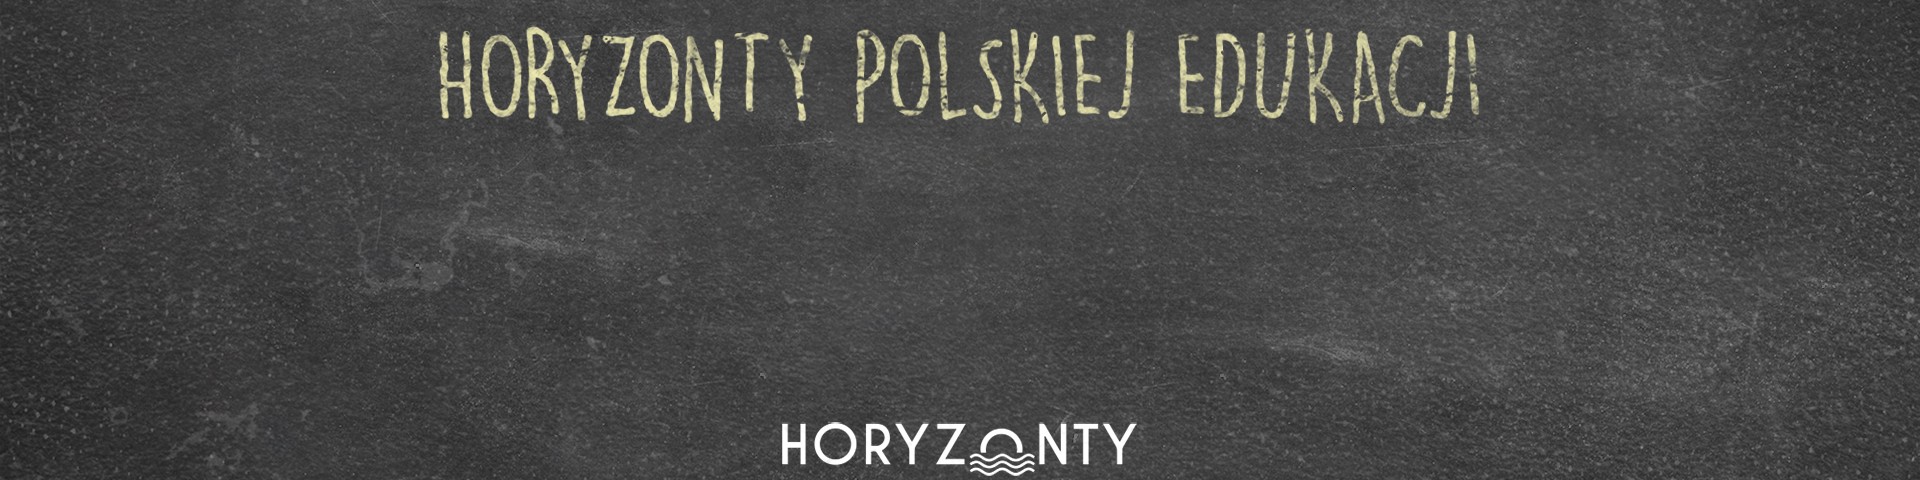 Horyzonty polskiej edukacji – trójkąty relacji